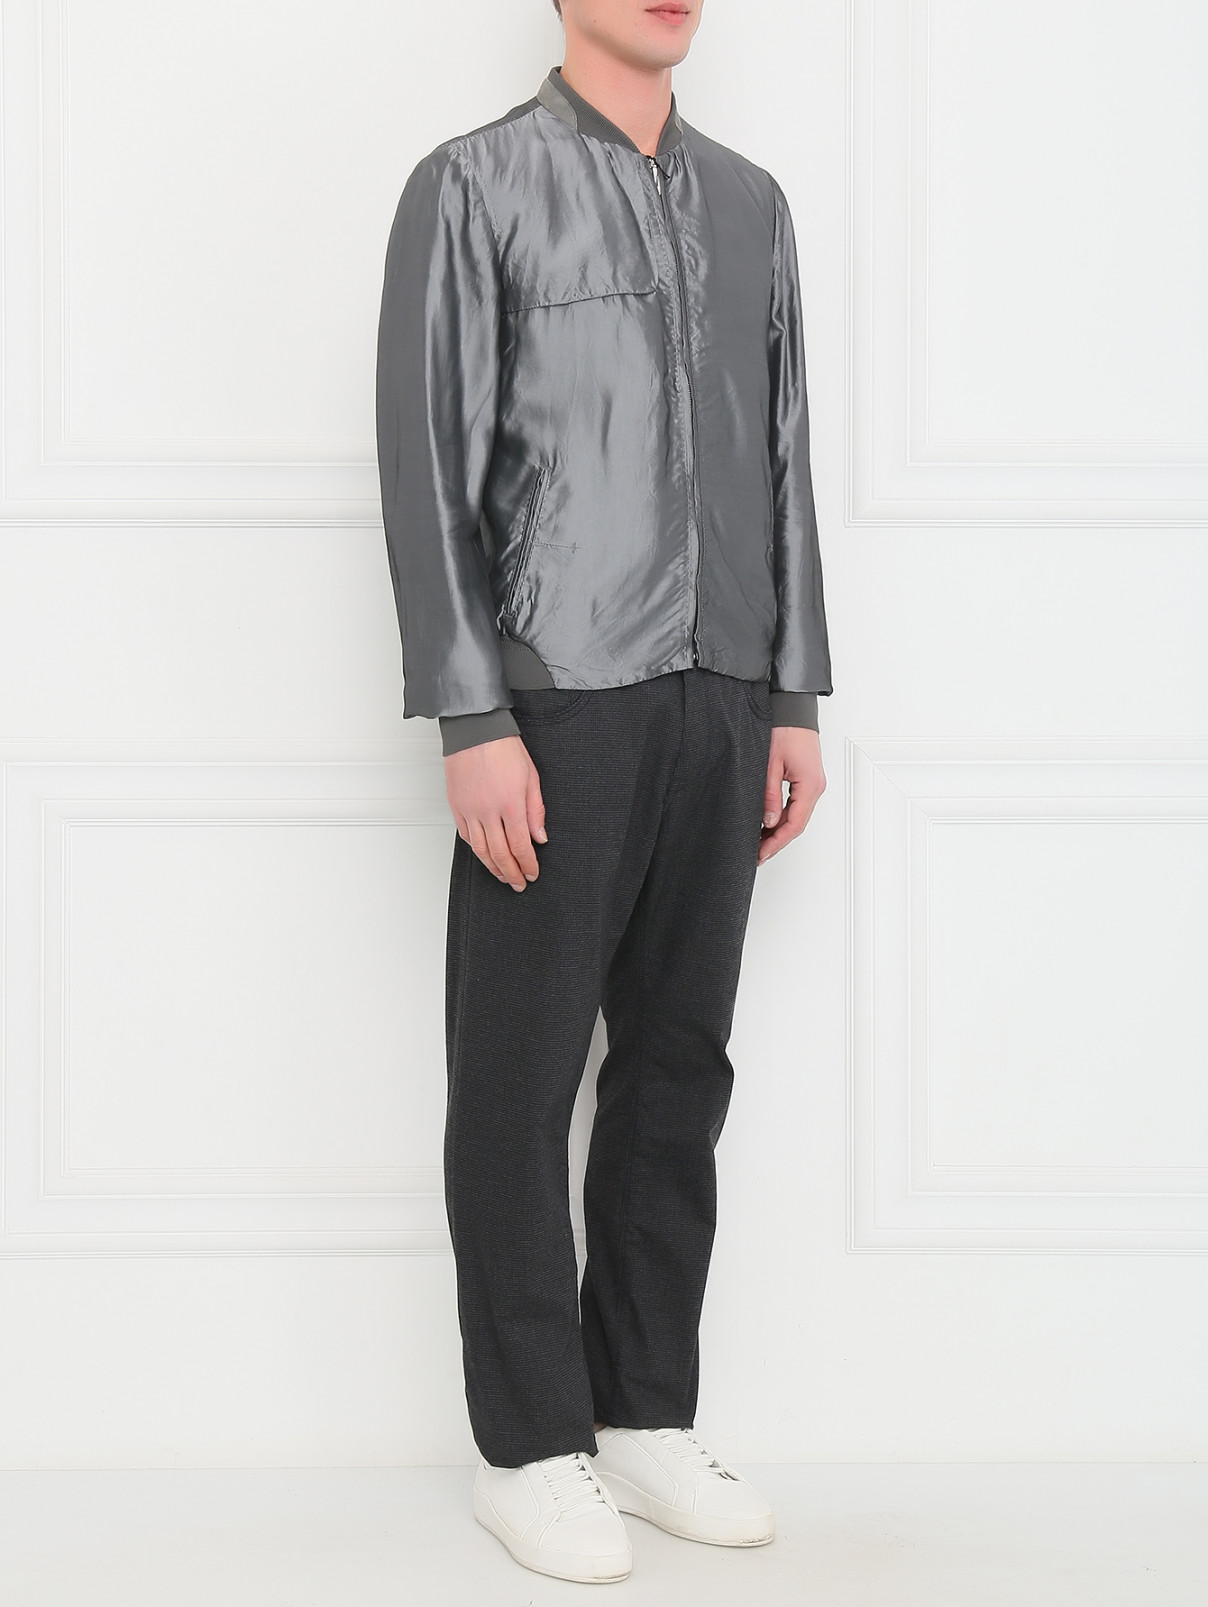 Куртка-бомбер на молнии с боковыми карманами Costume National  –  Модель Общий вид  – Цвет:  Серый